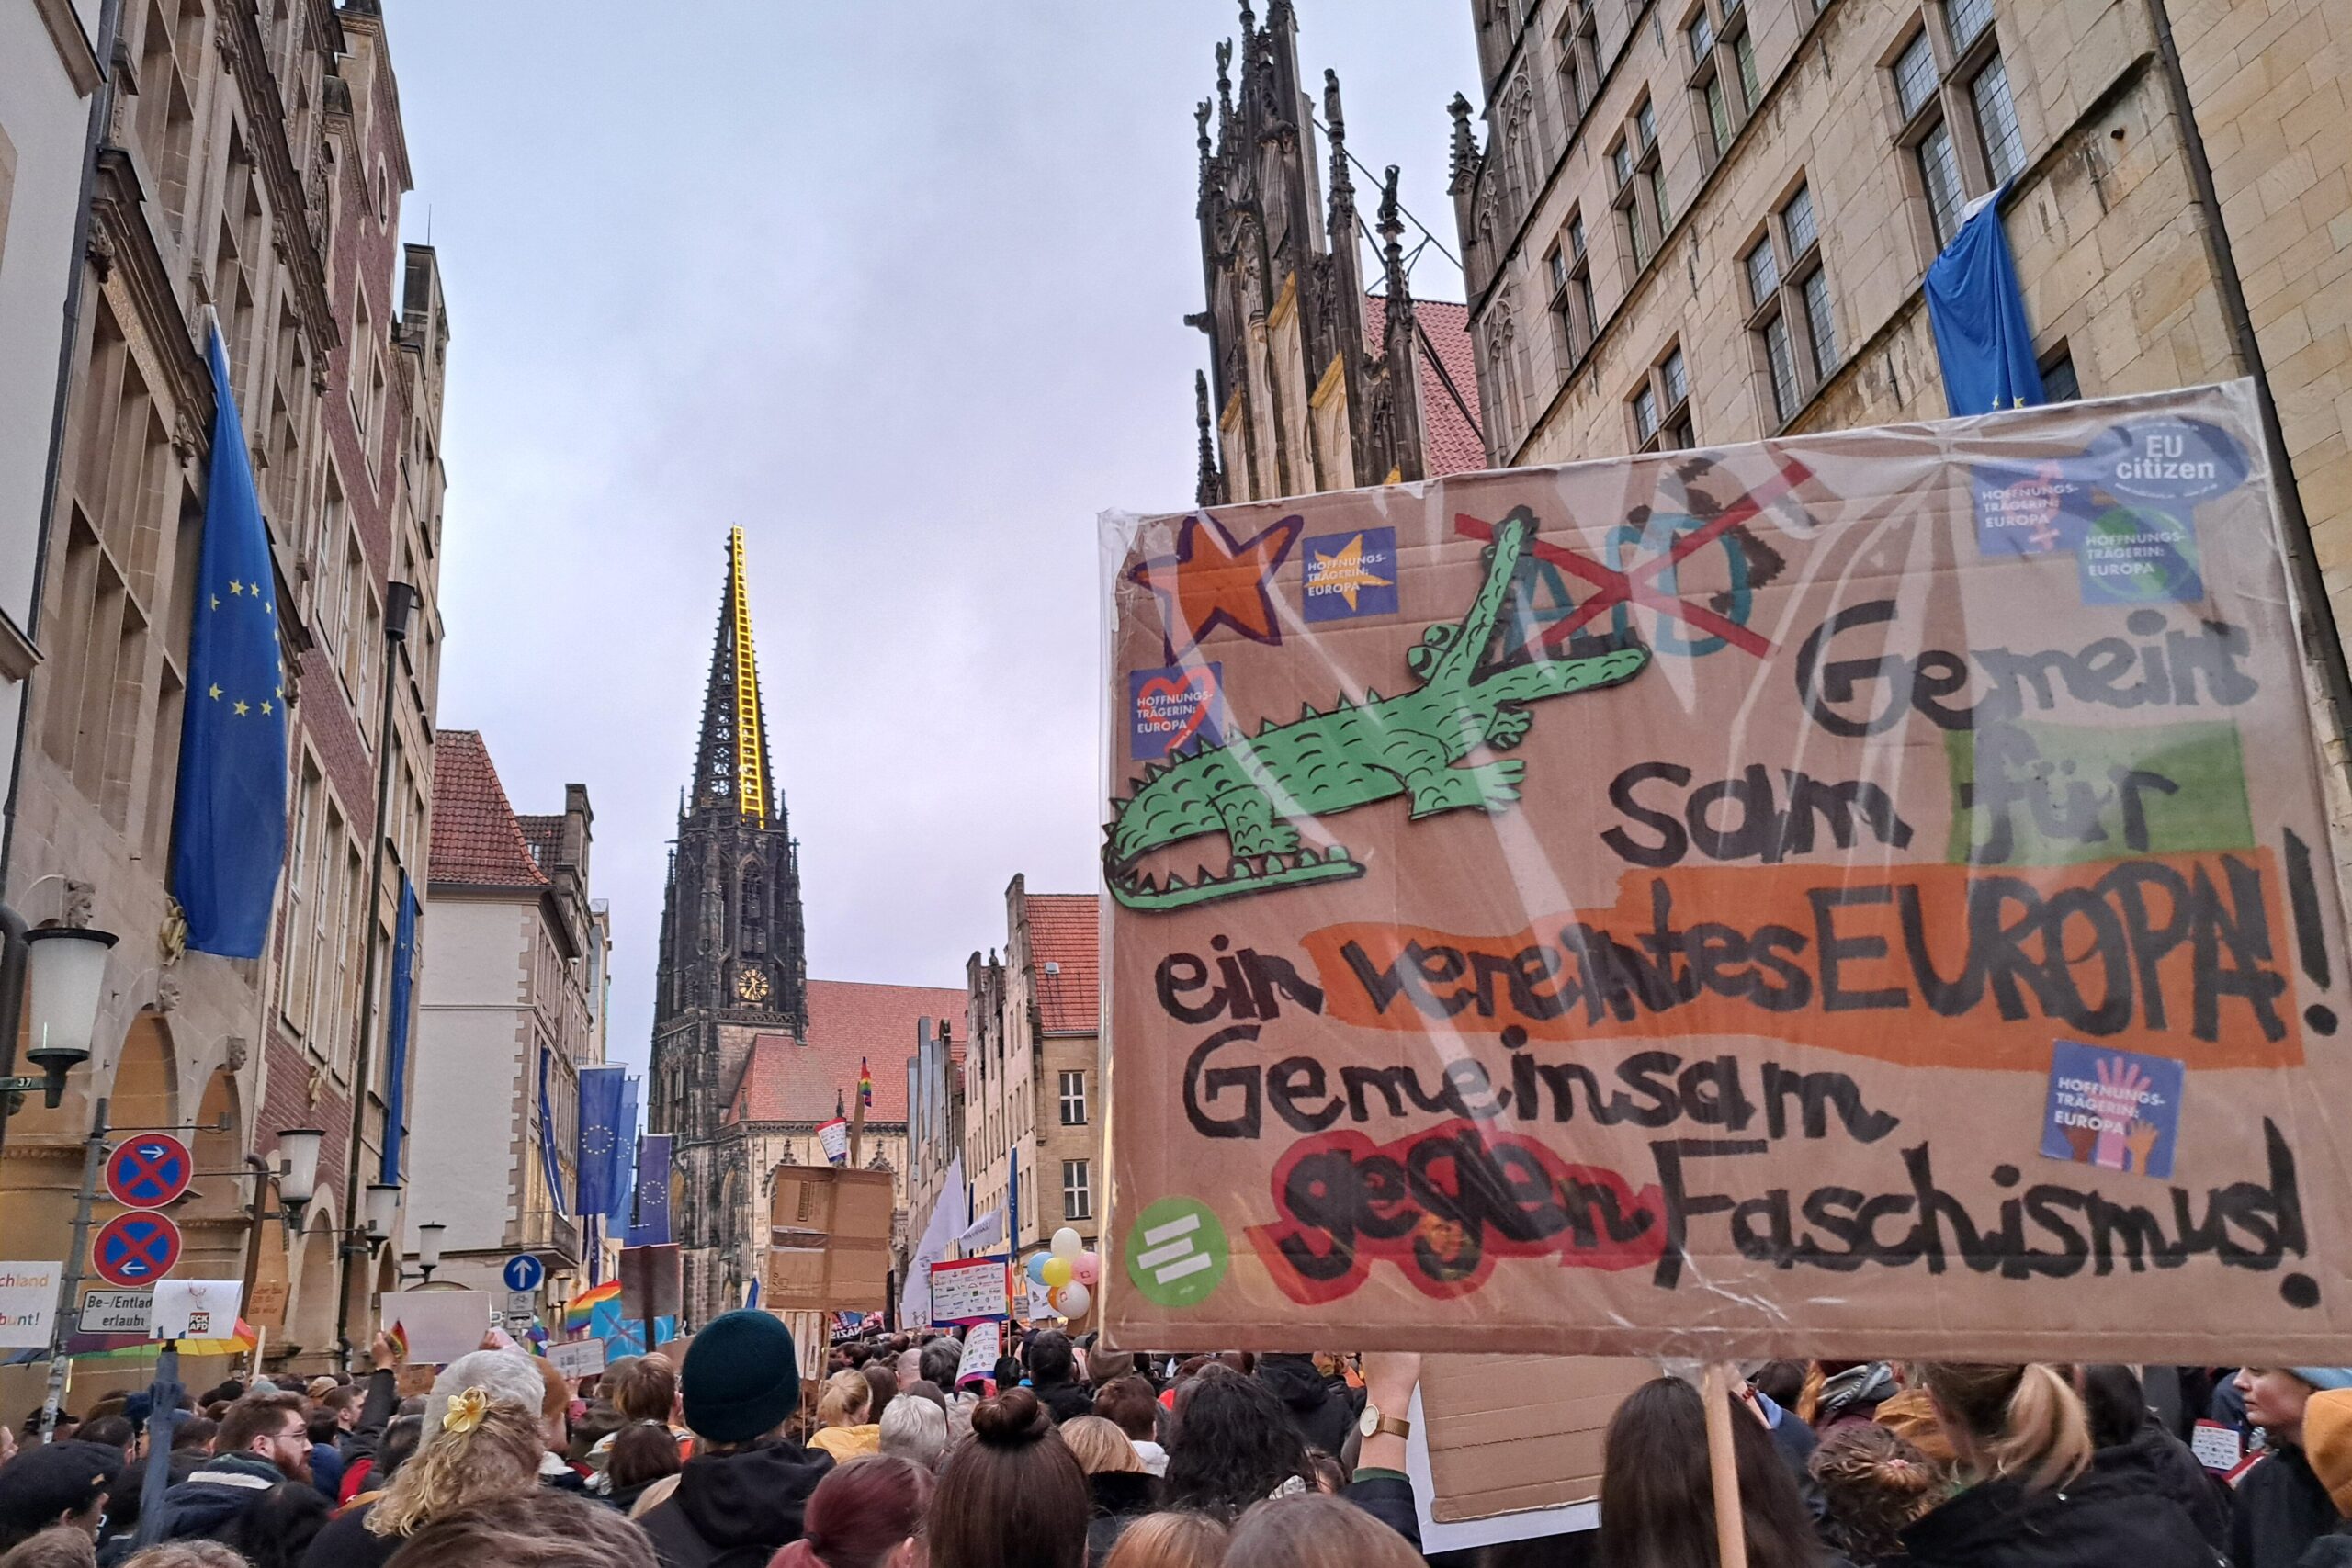 Bild von der Demo gegen die rechtsextreme AfD auf dem Prinzipalmarkt in Münster und ein Demoplakat mit der Aufschrift "Gemeinsam für ein vereintes Europa. Gemeinsam gegen Faschismus"